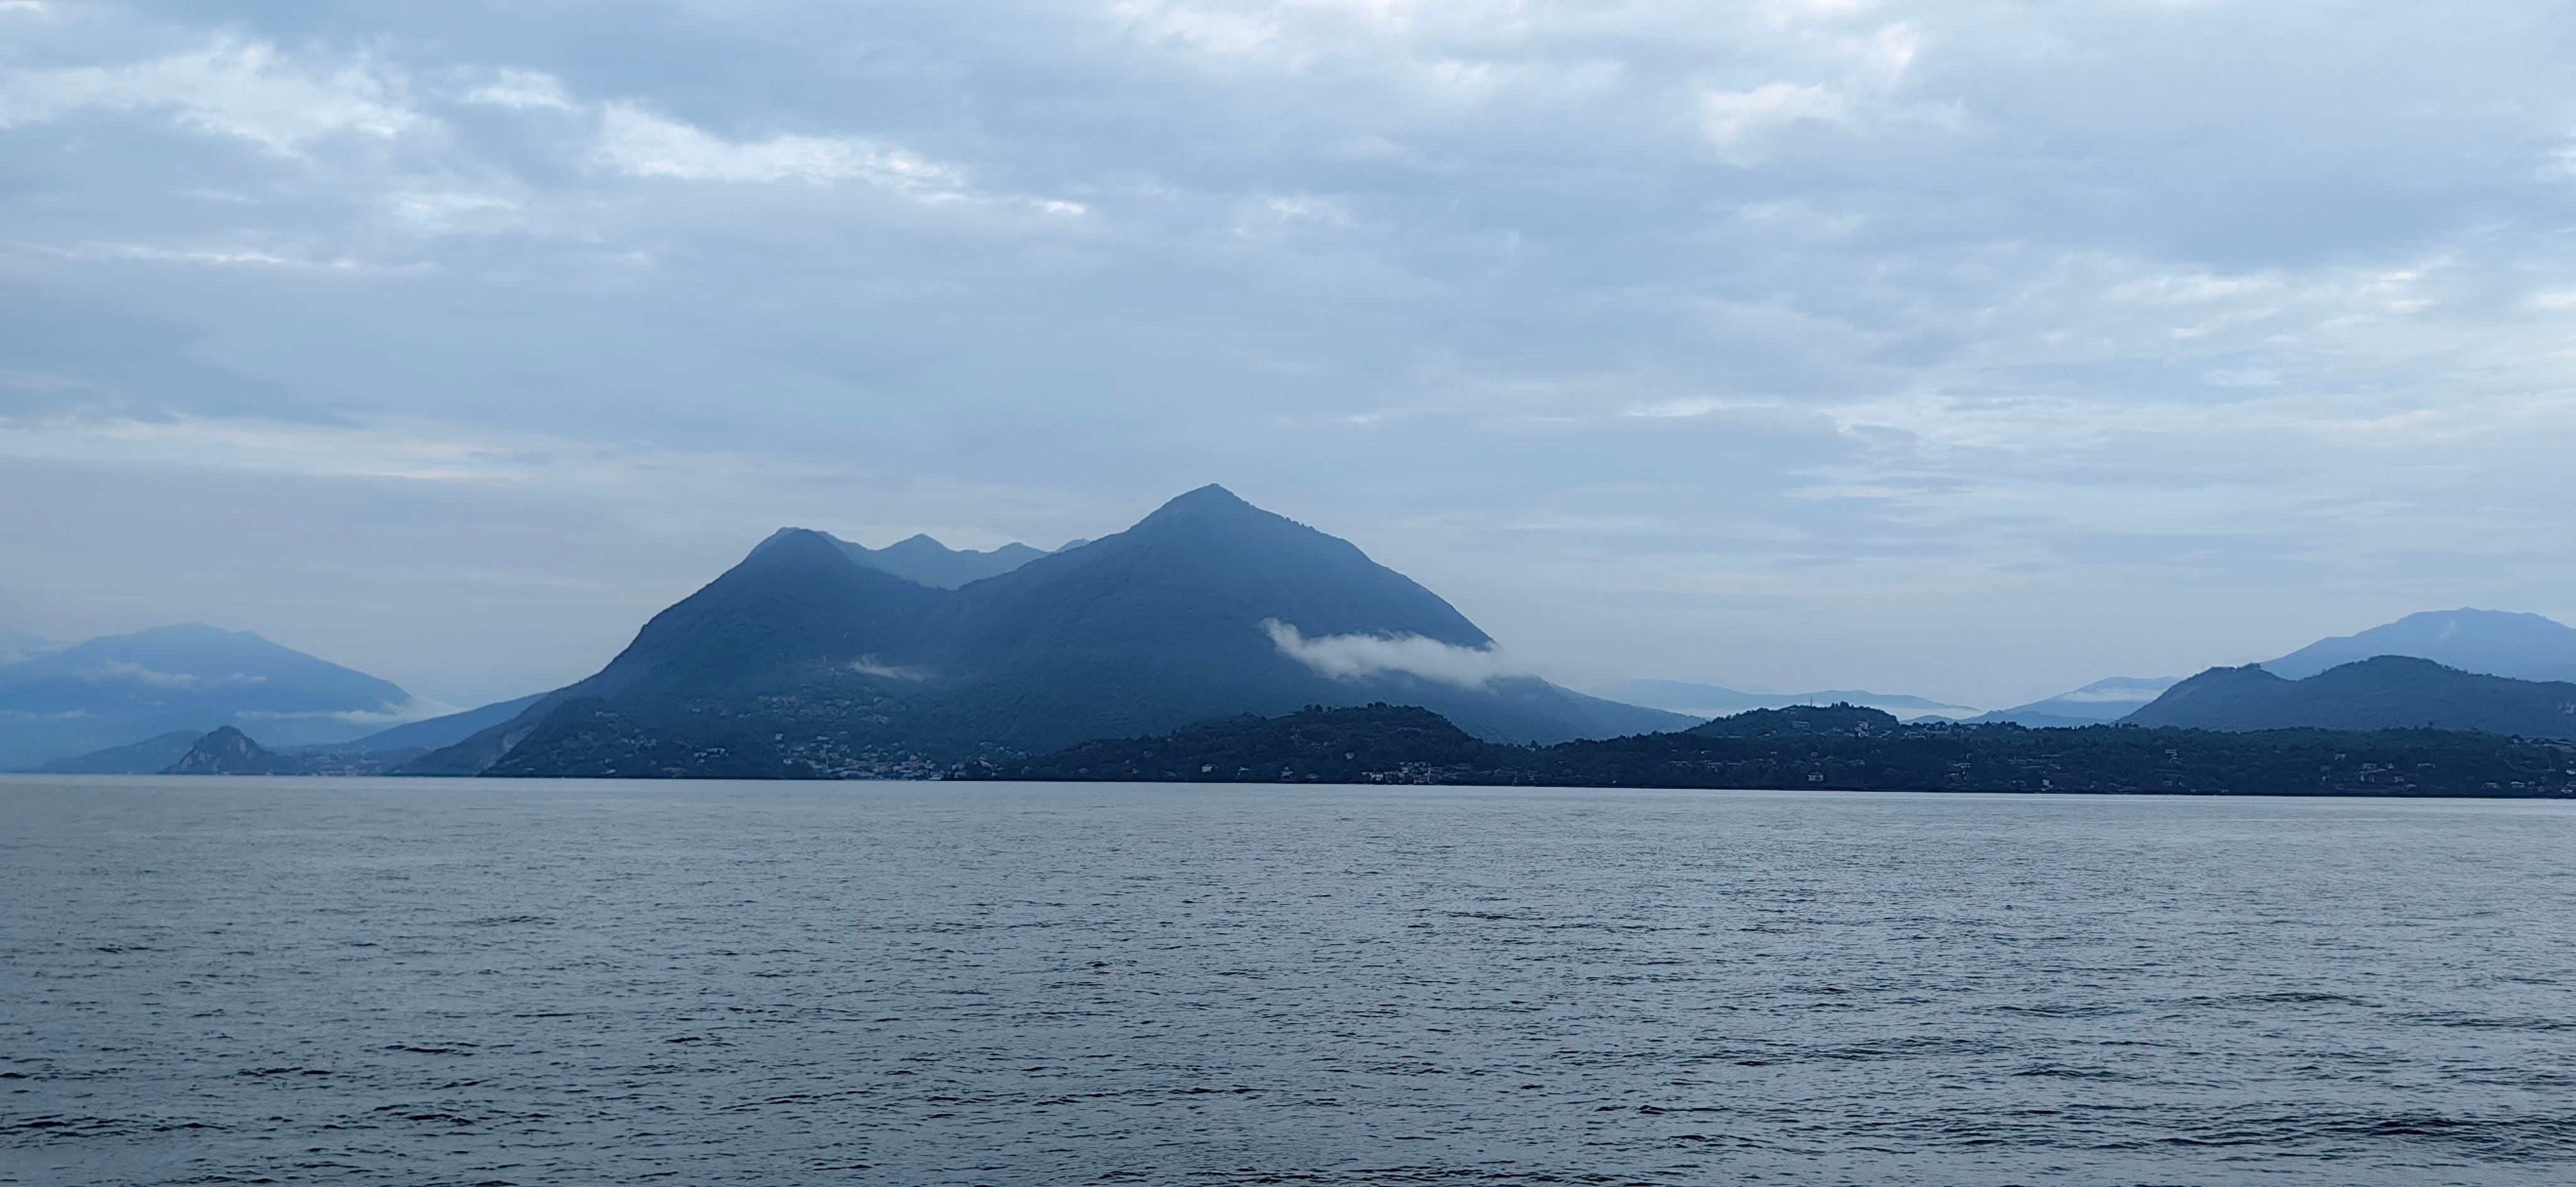 Las orillas del Lago Maggiore son sitio de descanso no solo para italianos, sino también para suizos y alemanes, quienes llegan después de manejar unas pocas horas. 